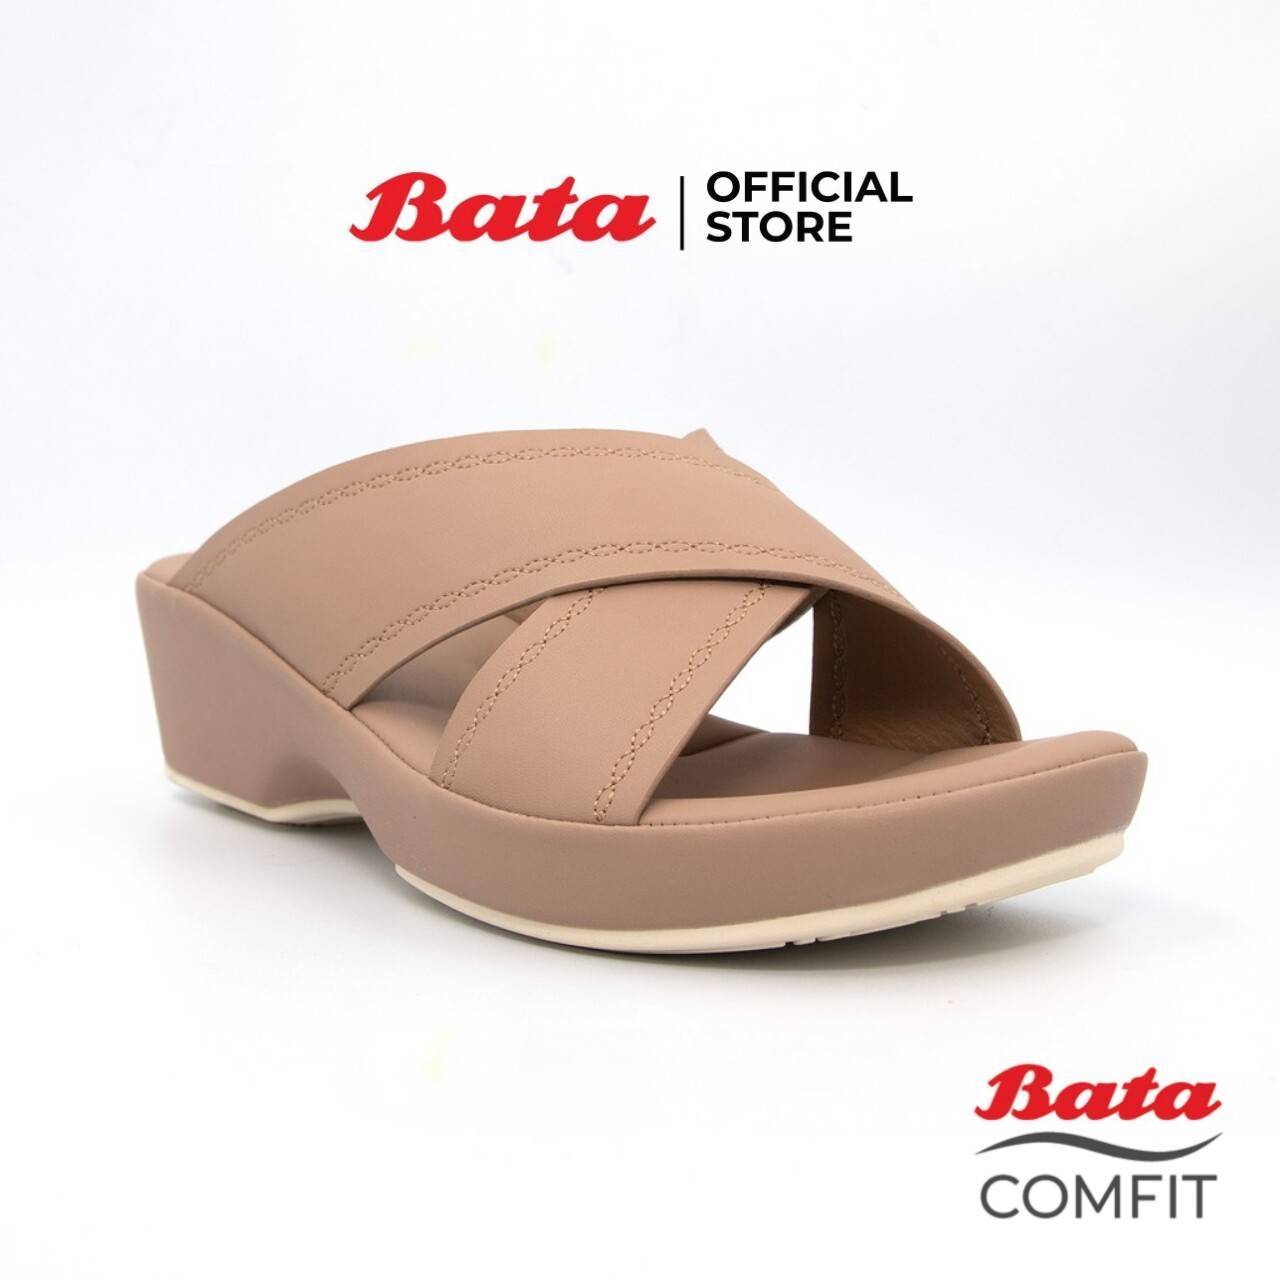 BATA COMFIT WEDGE รองเท้าส้นตึก แบบสวม สูง 1.5 นิ้ว สีชมพูกะปิ รหัส 6615703 / สีดำ รหัส 6616703 Ladiescomfort Fashion